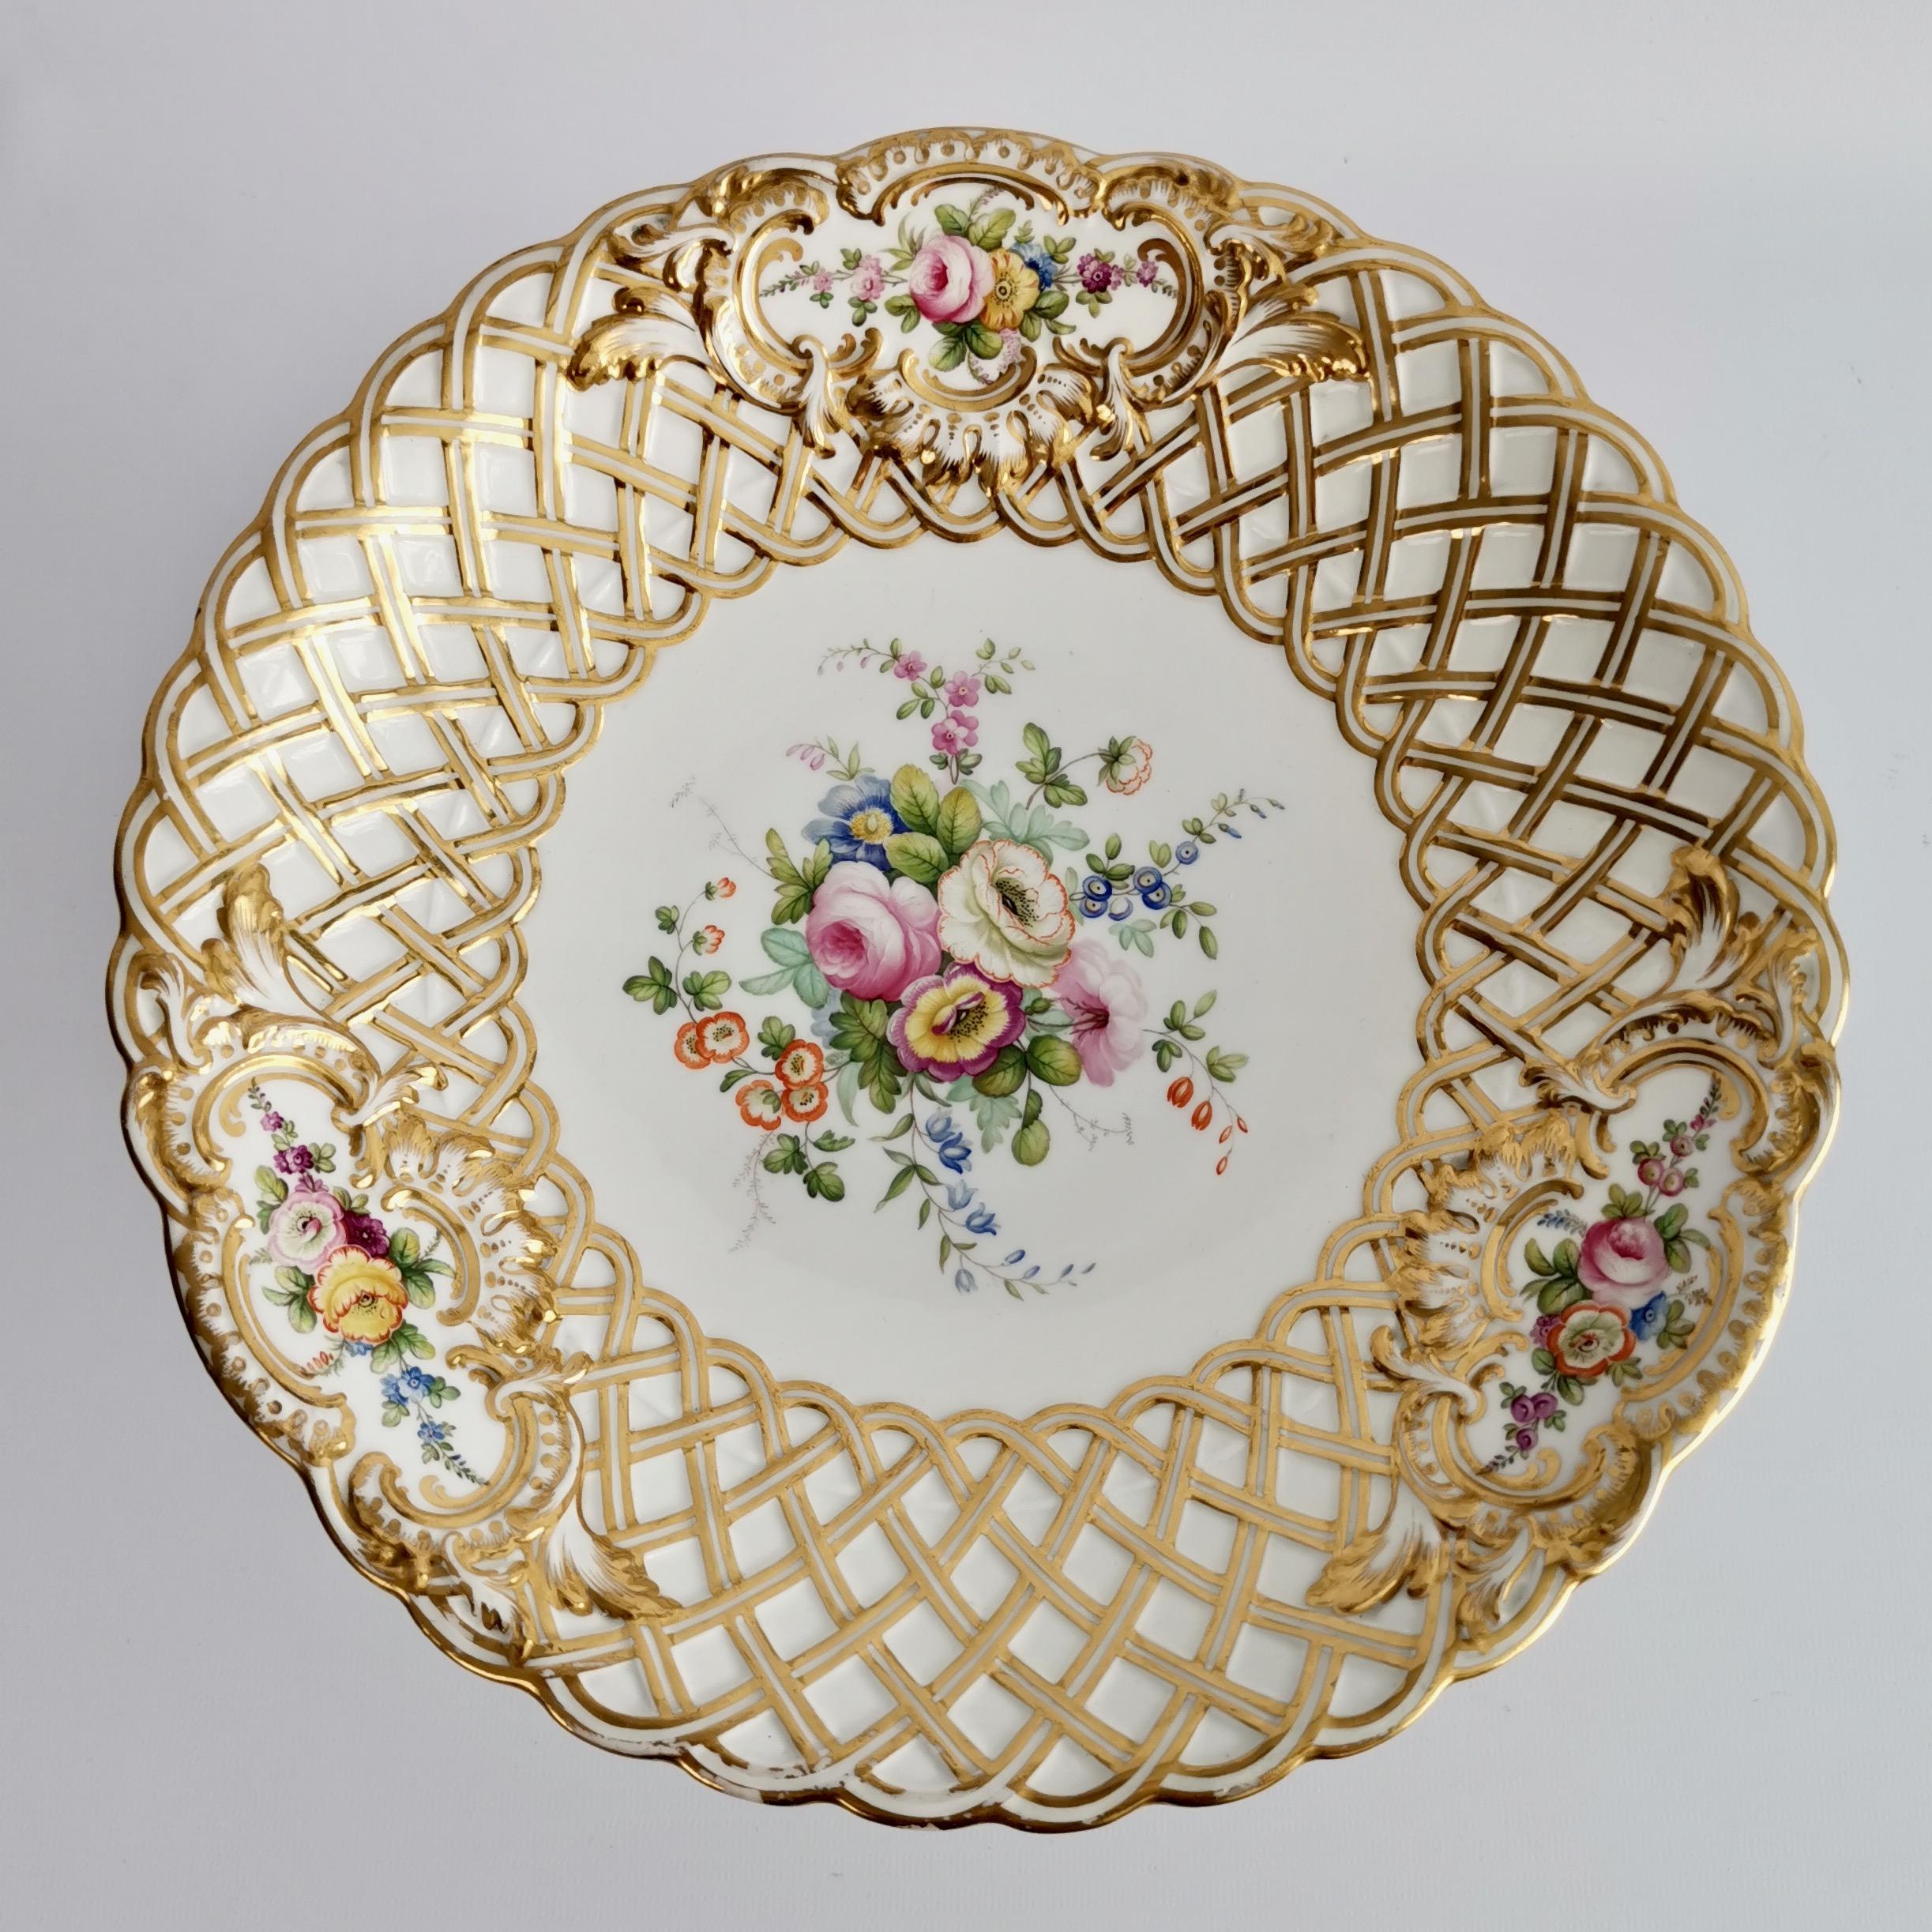 Minton Porcelain Dessert Service, White, Flowers J. Bancroft, Victorian, 1841 5